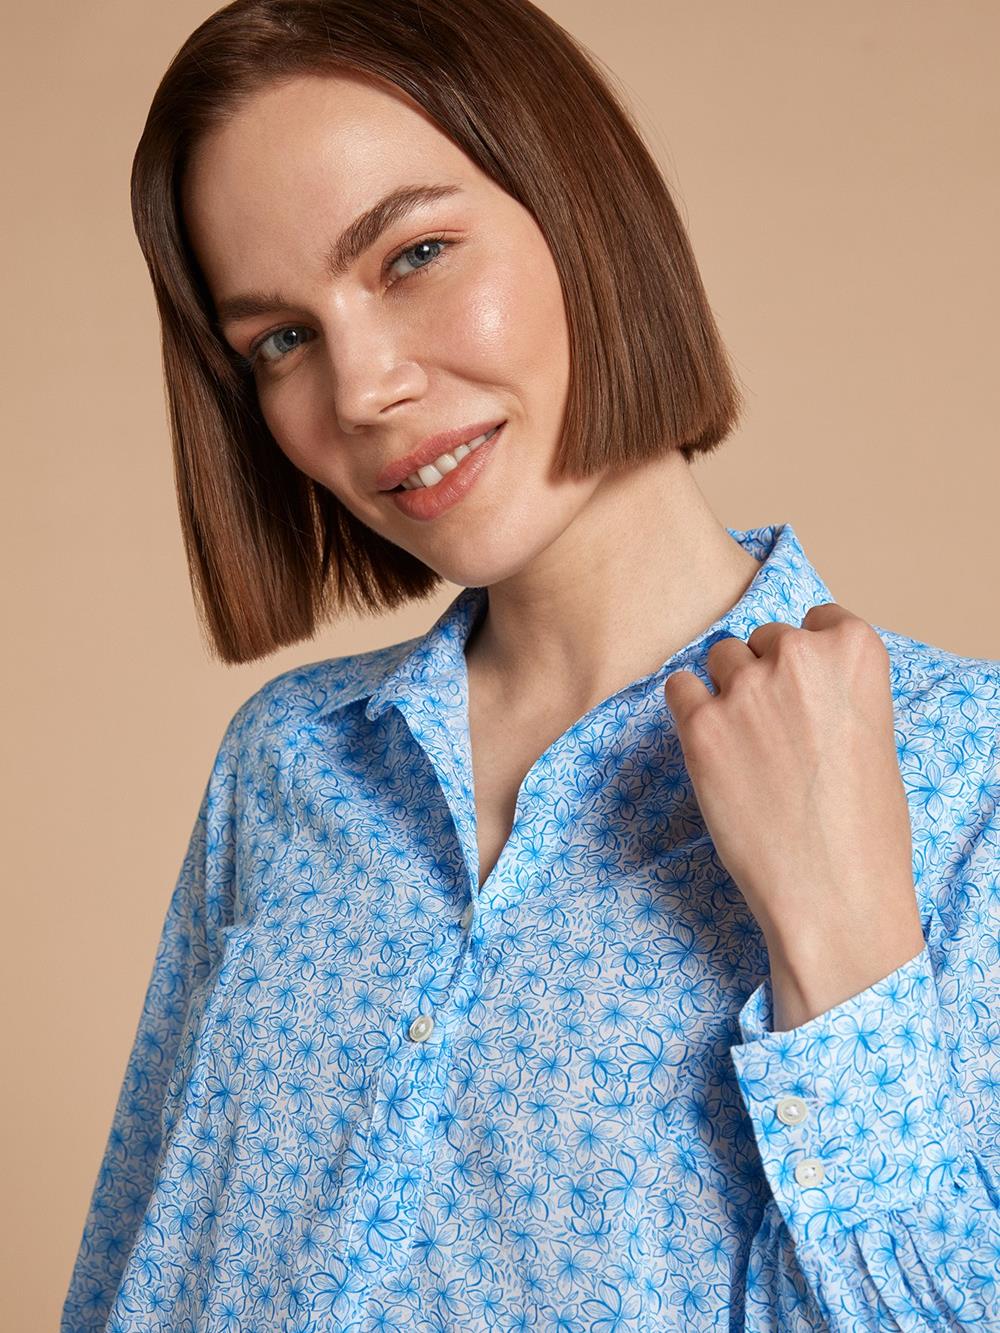 Ninon floral printed shirt